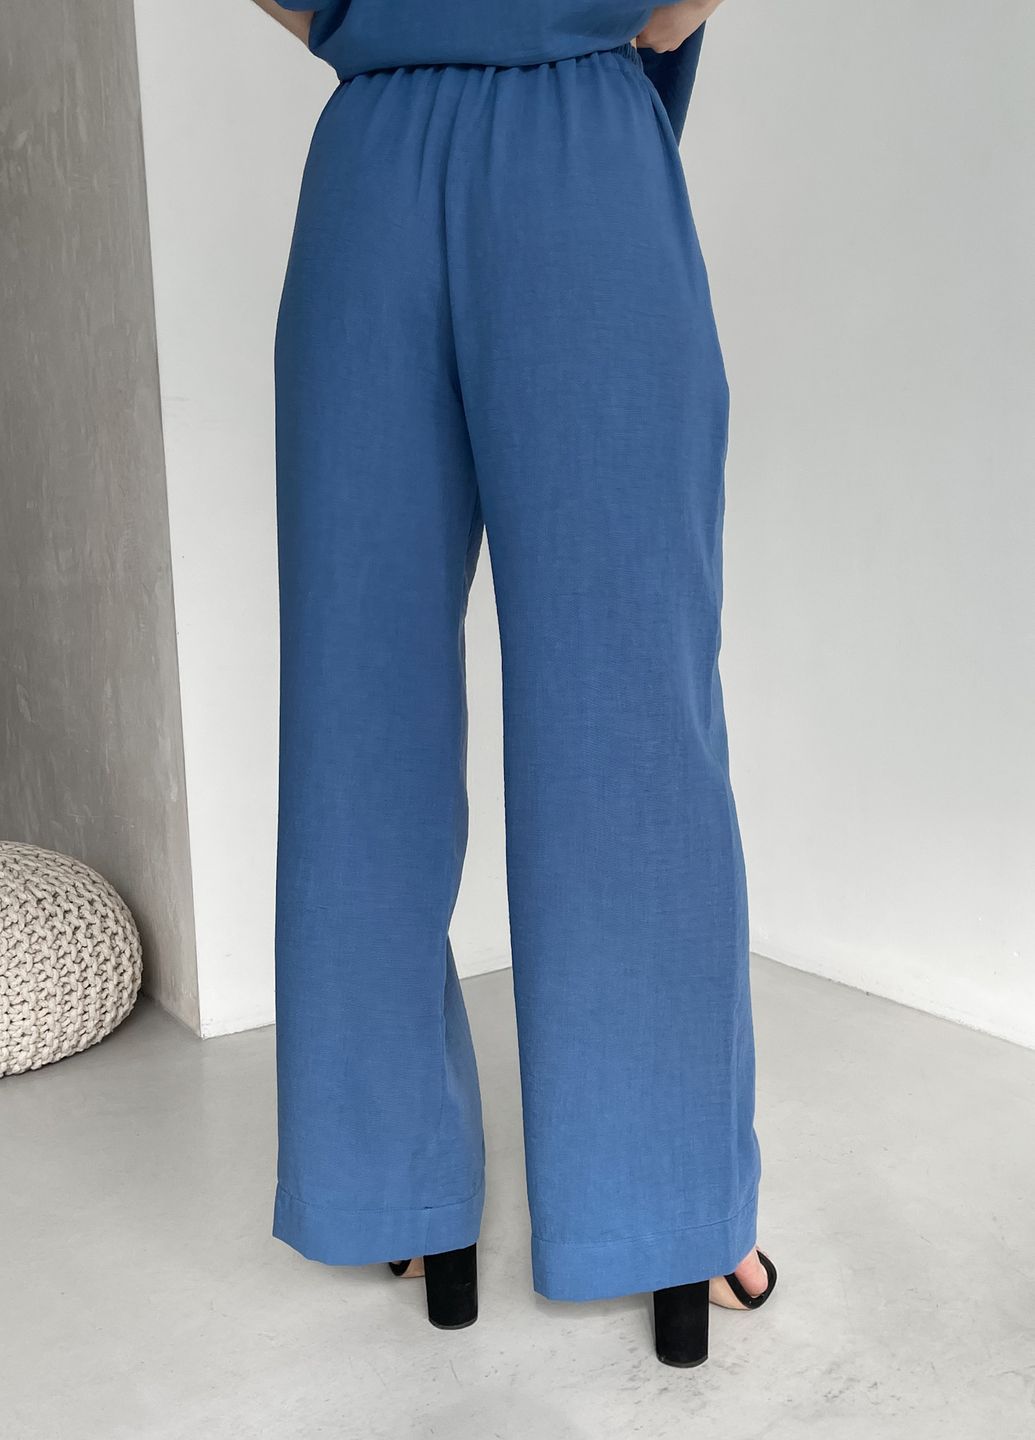 Женские брюки клеш от бедра из льна синие Merlini Палуцца 600000143, размер 42-44